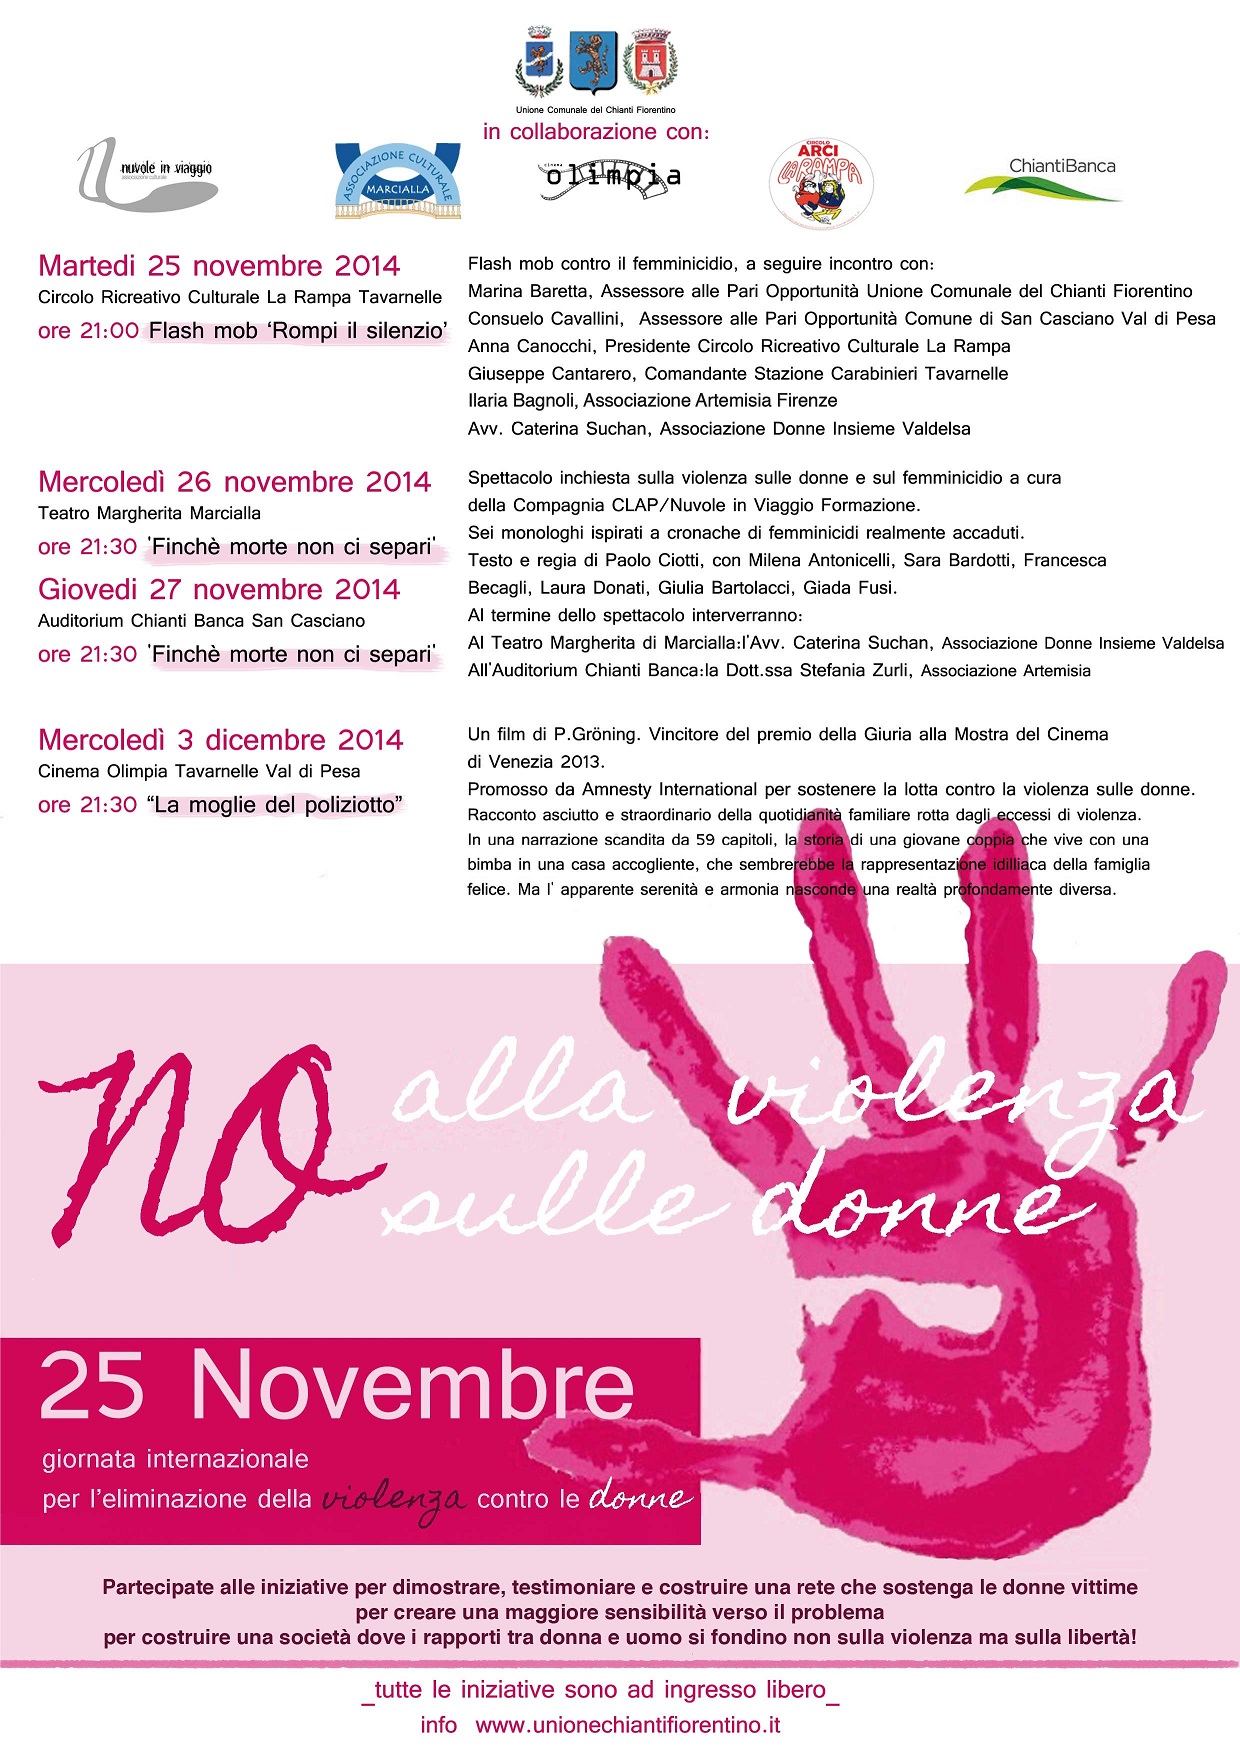 Programma delle iniziative promosse nei Comuni del Chianti in occasione del 25 novembre - giornata internazionale per l'eliminazione della violenza contro le donne